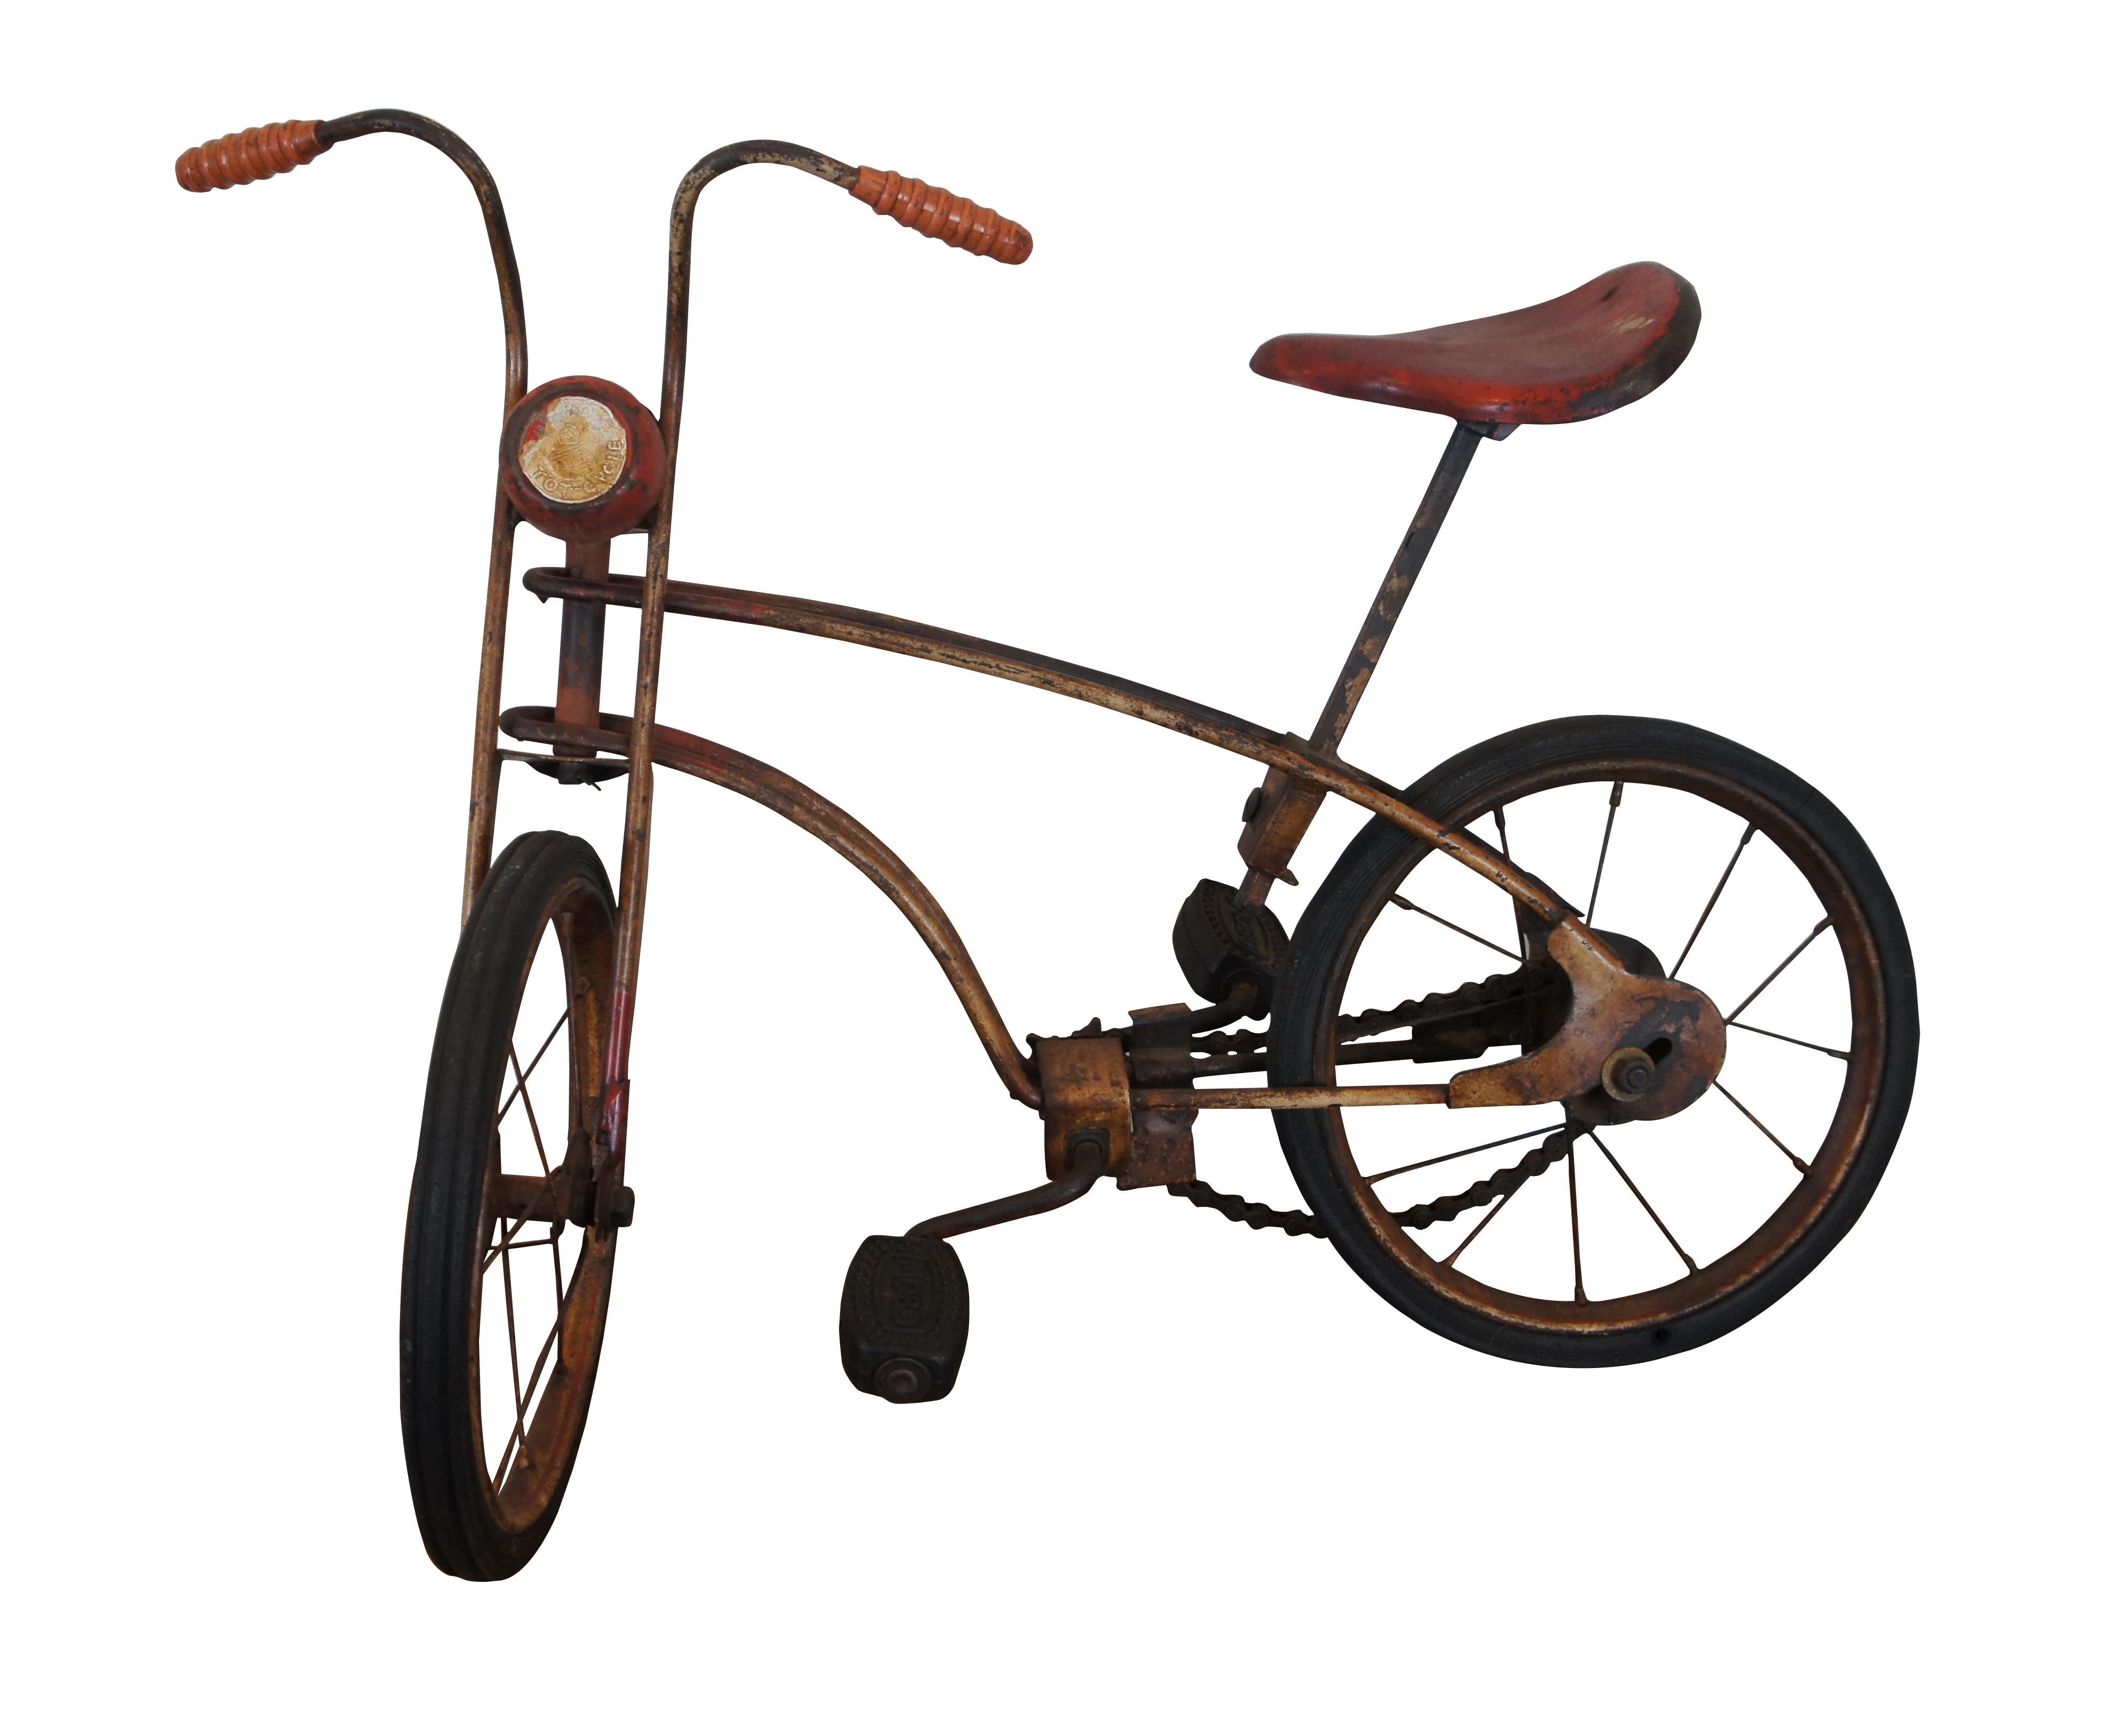 Bicyclette d'enfant ancienne, le Mobo Tot-Cycle de Sebel Products d'Angleterre.  Cadre en acier bien usé avec peinture rouge et blanche, pneus et pédales en caoutchouc, poignées texturées et selle en métal.  Circa 1926.